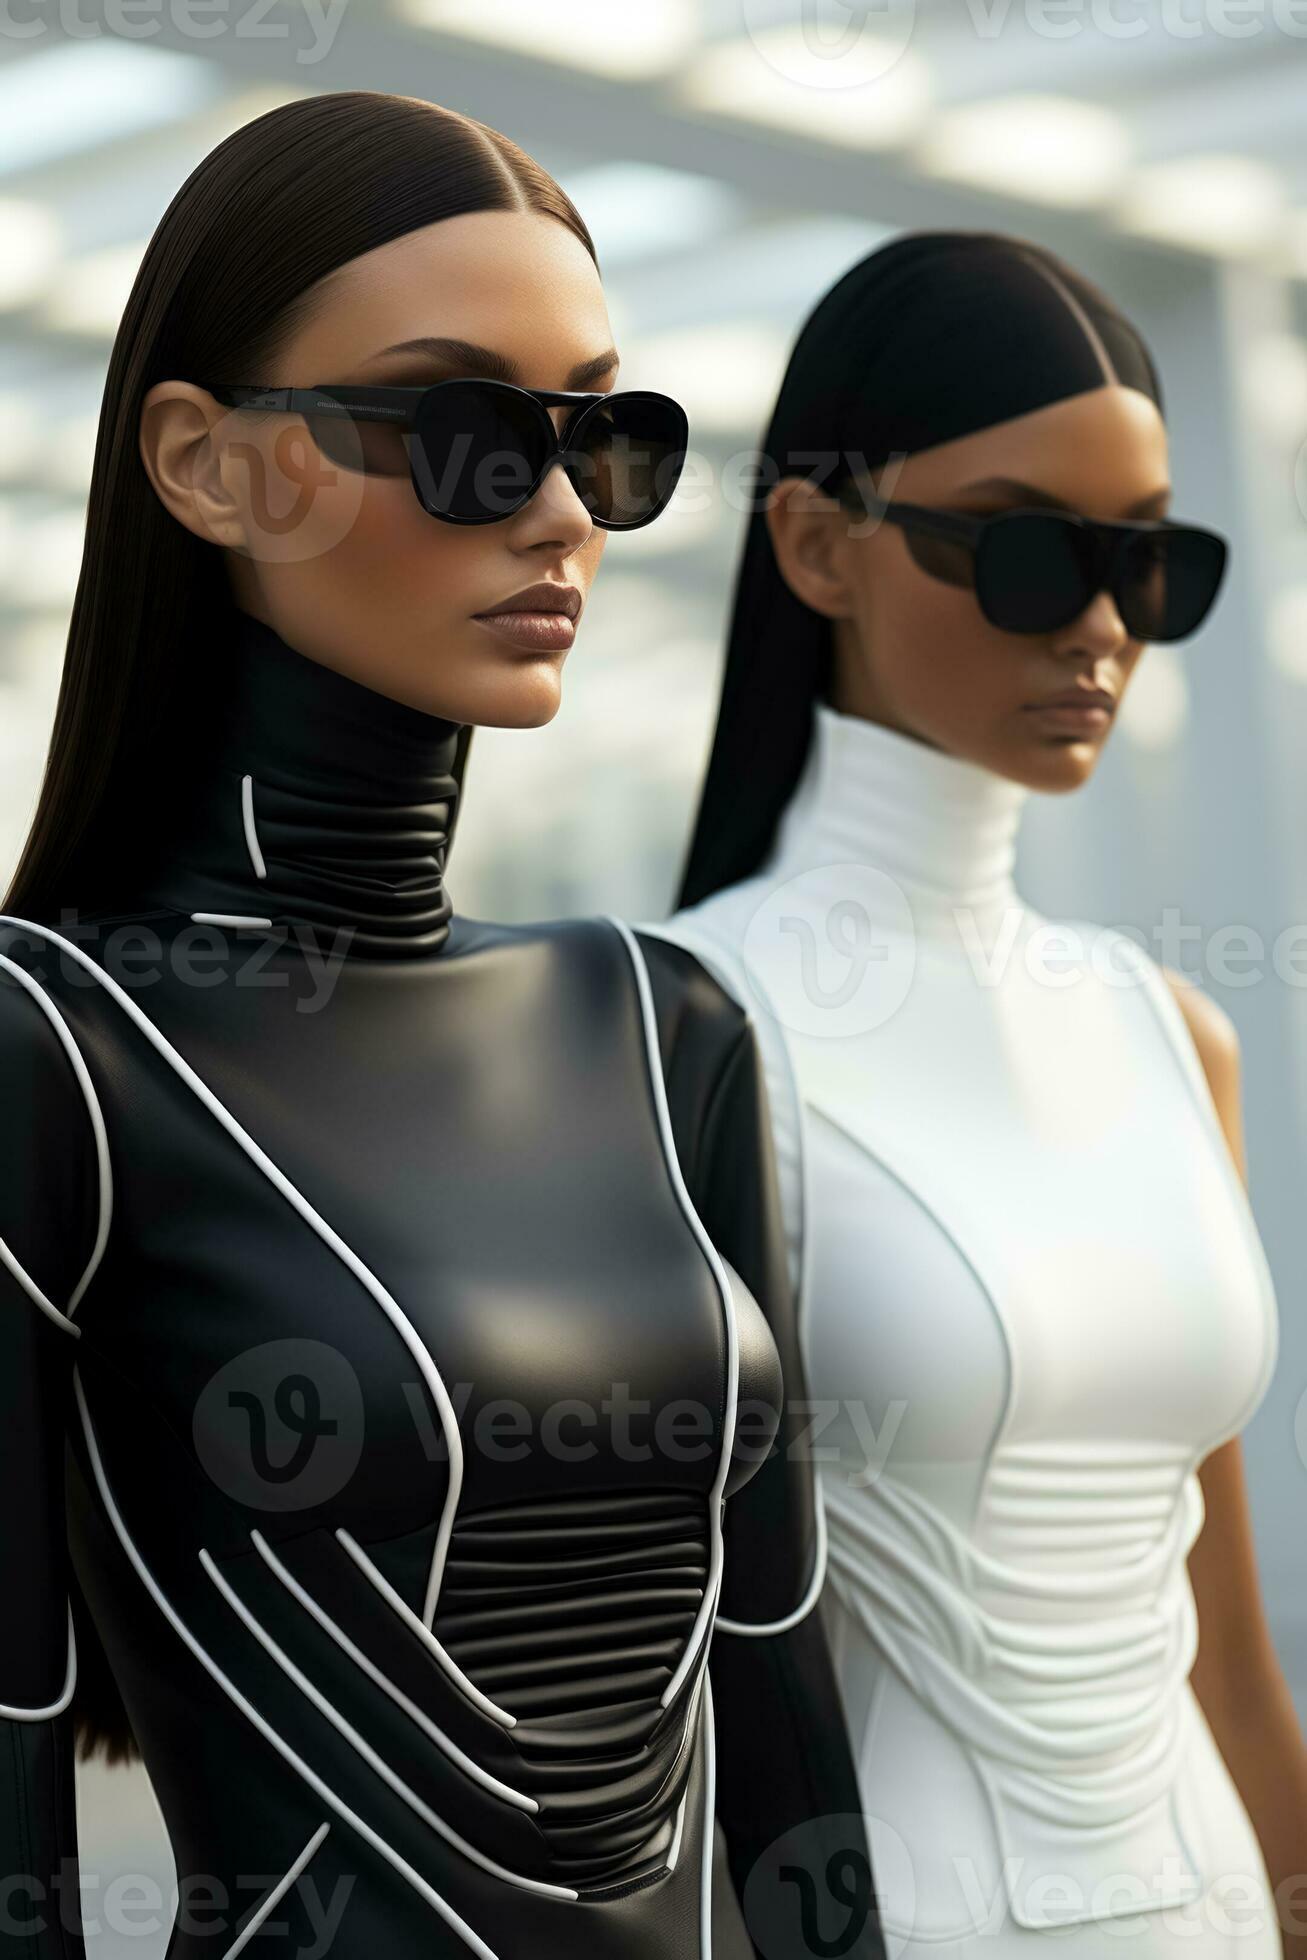 female futuristic clothing